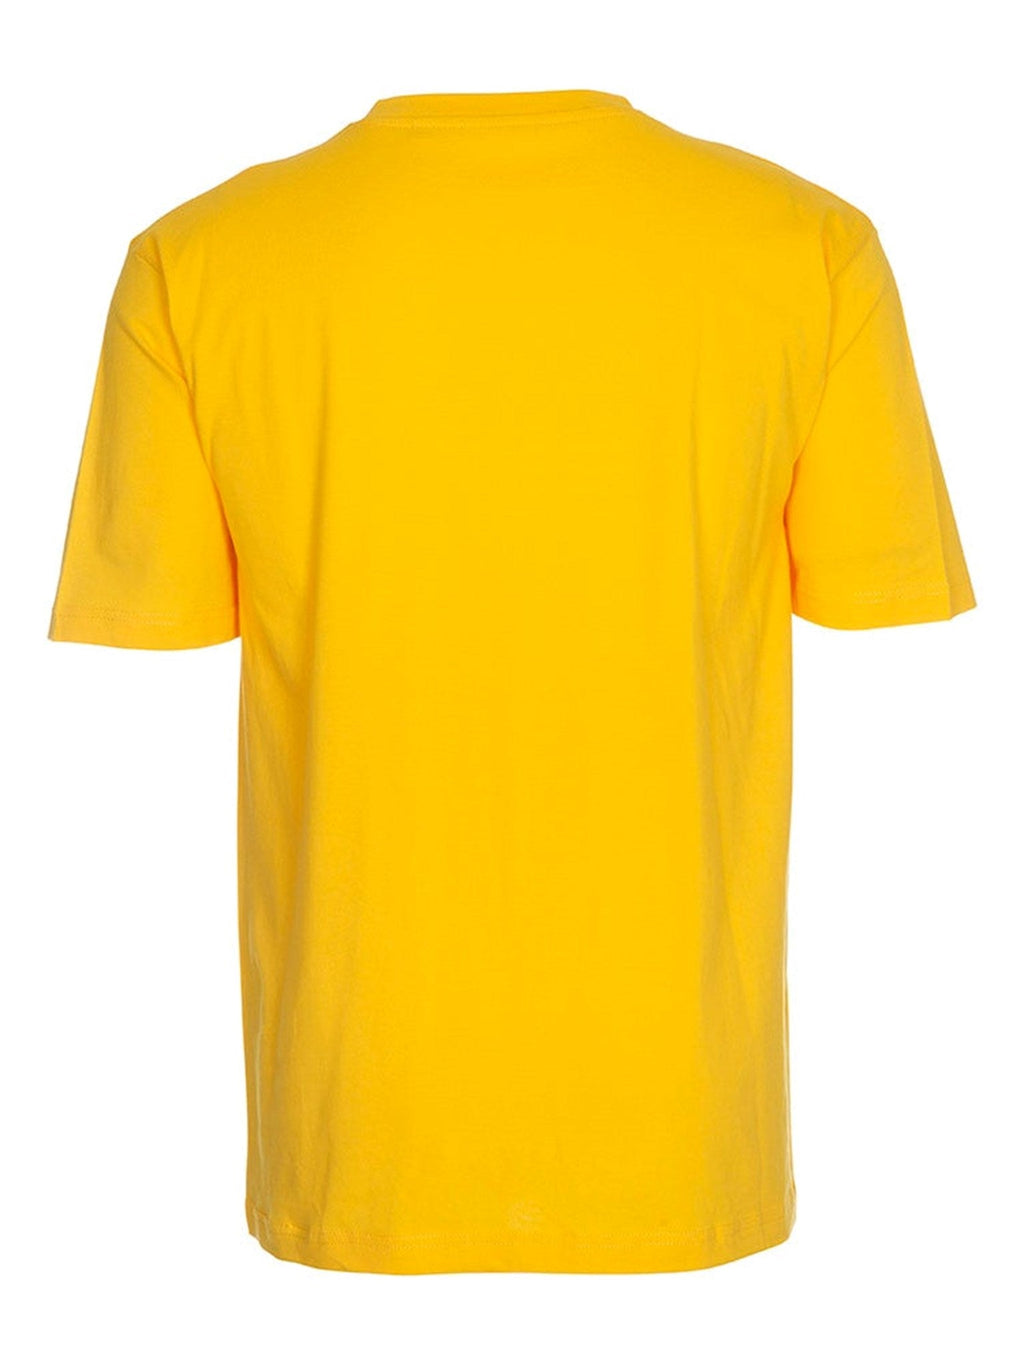 超大T恤 - 黄色